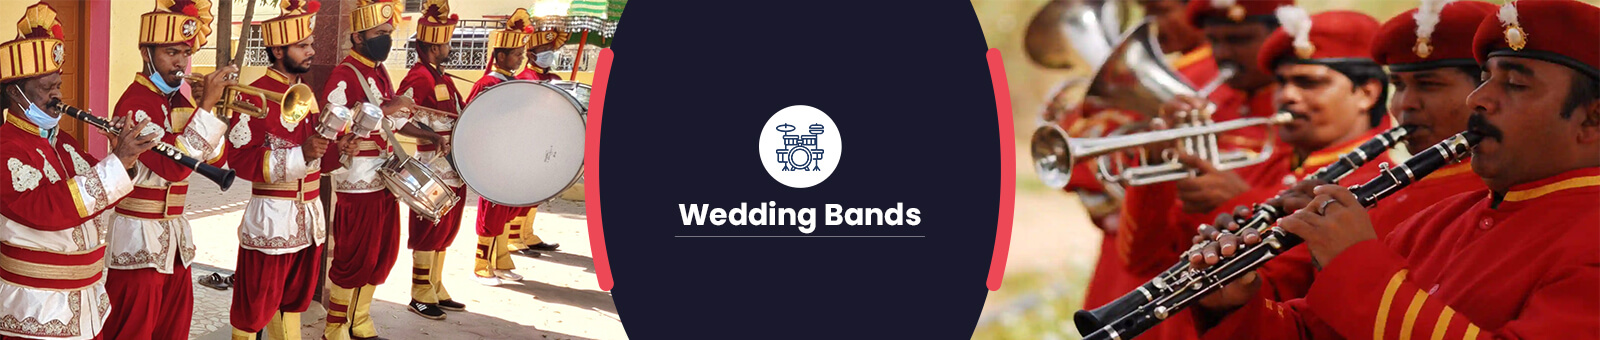 Wedding Bands in Chandigarh